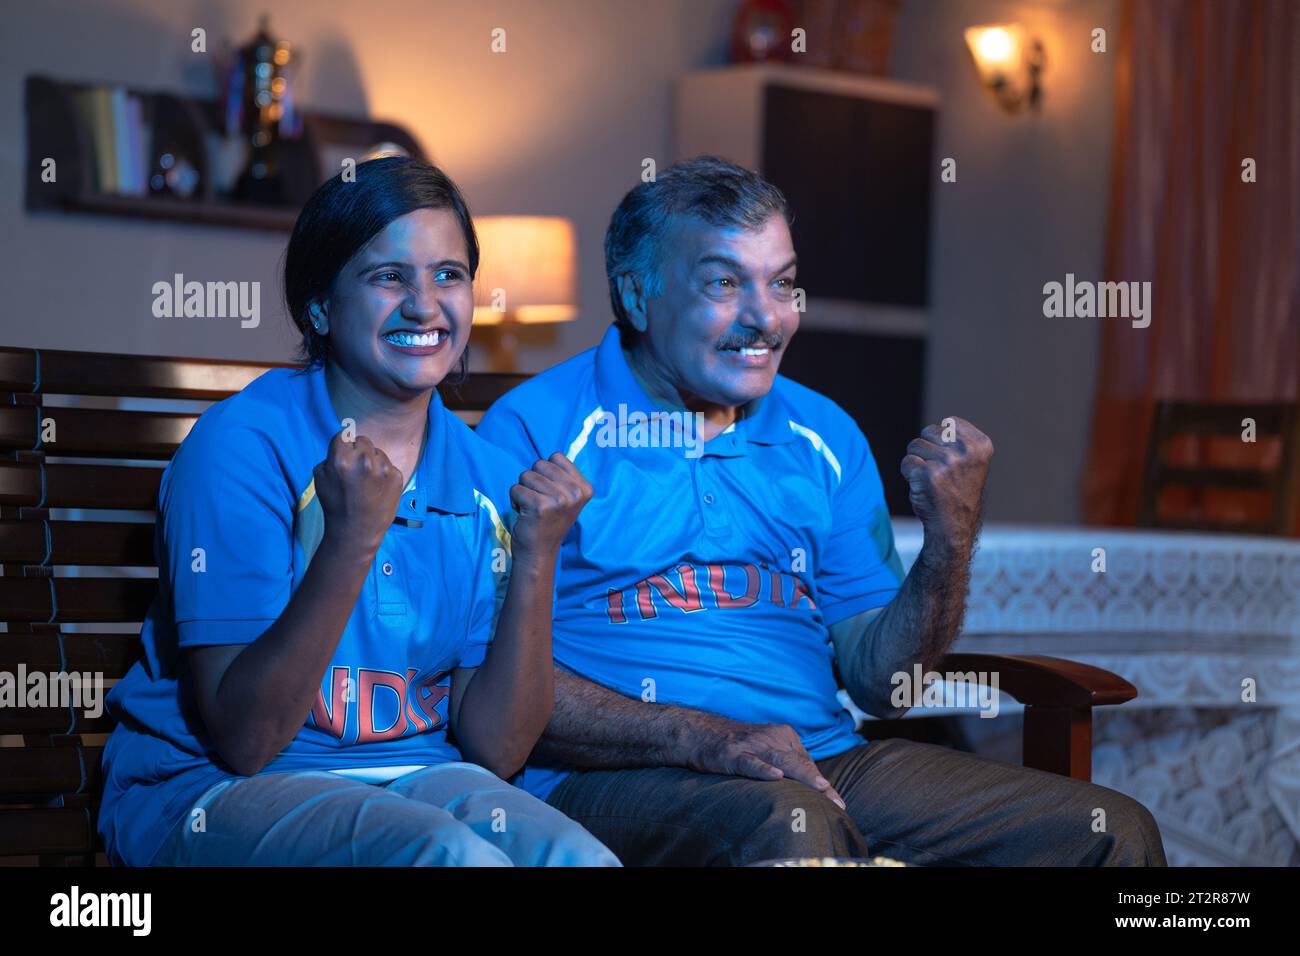 Seitenansicht des aufgeregten indischen Vaters und der Tochter, die als Indien schreien, während sie Cricket im fernsehen oder im Fernsehen zu Hause anschauen - Konzept des fröhlichen Feierns Stockfoto